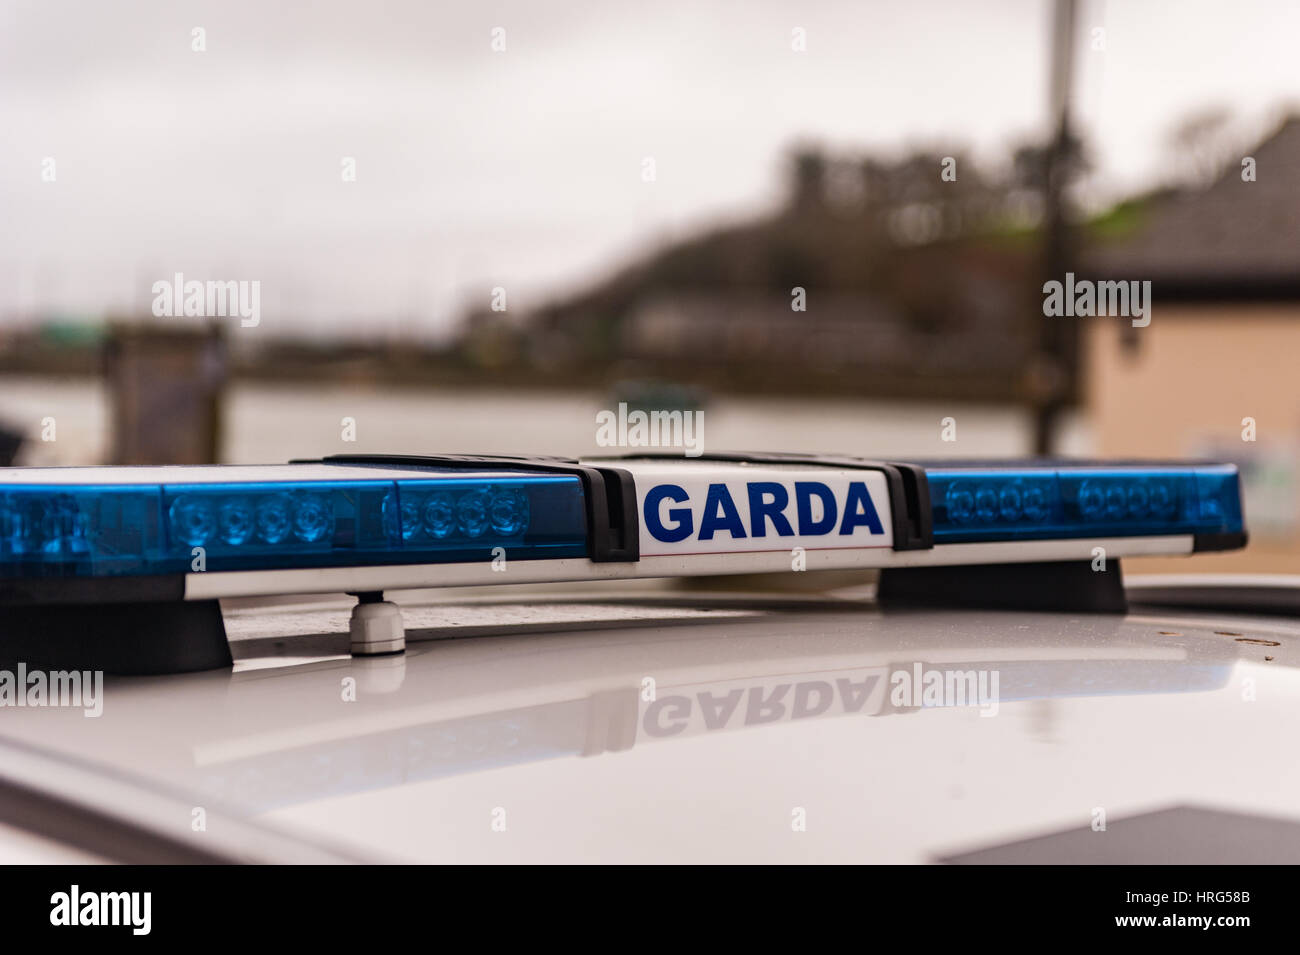 Garda/irische Polizei Zeichen und Blaulicht auf Garda/Polizeiauto mit Textfreiraum. Stockfoto